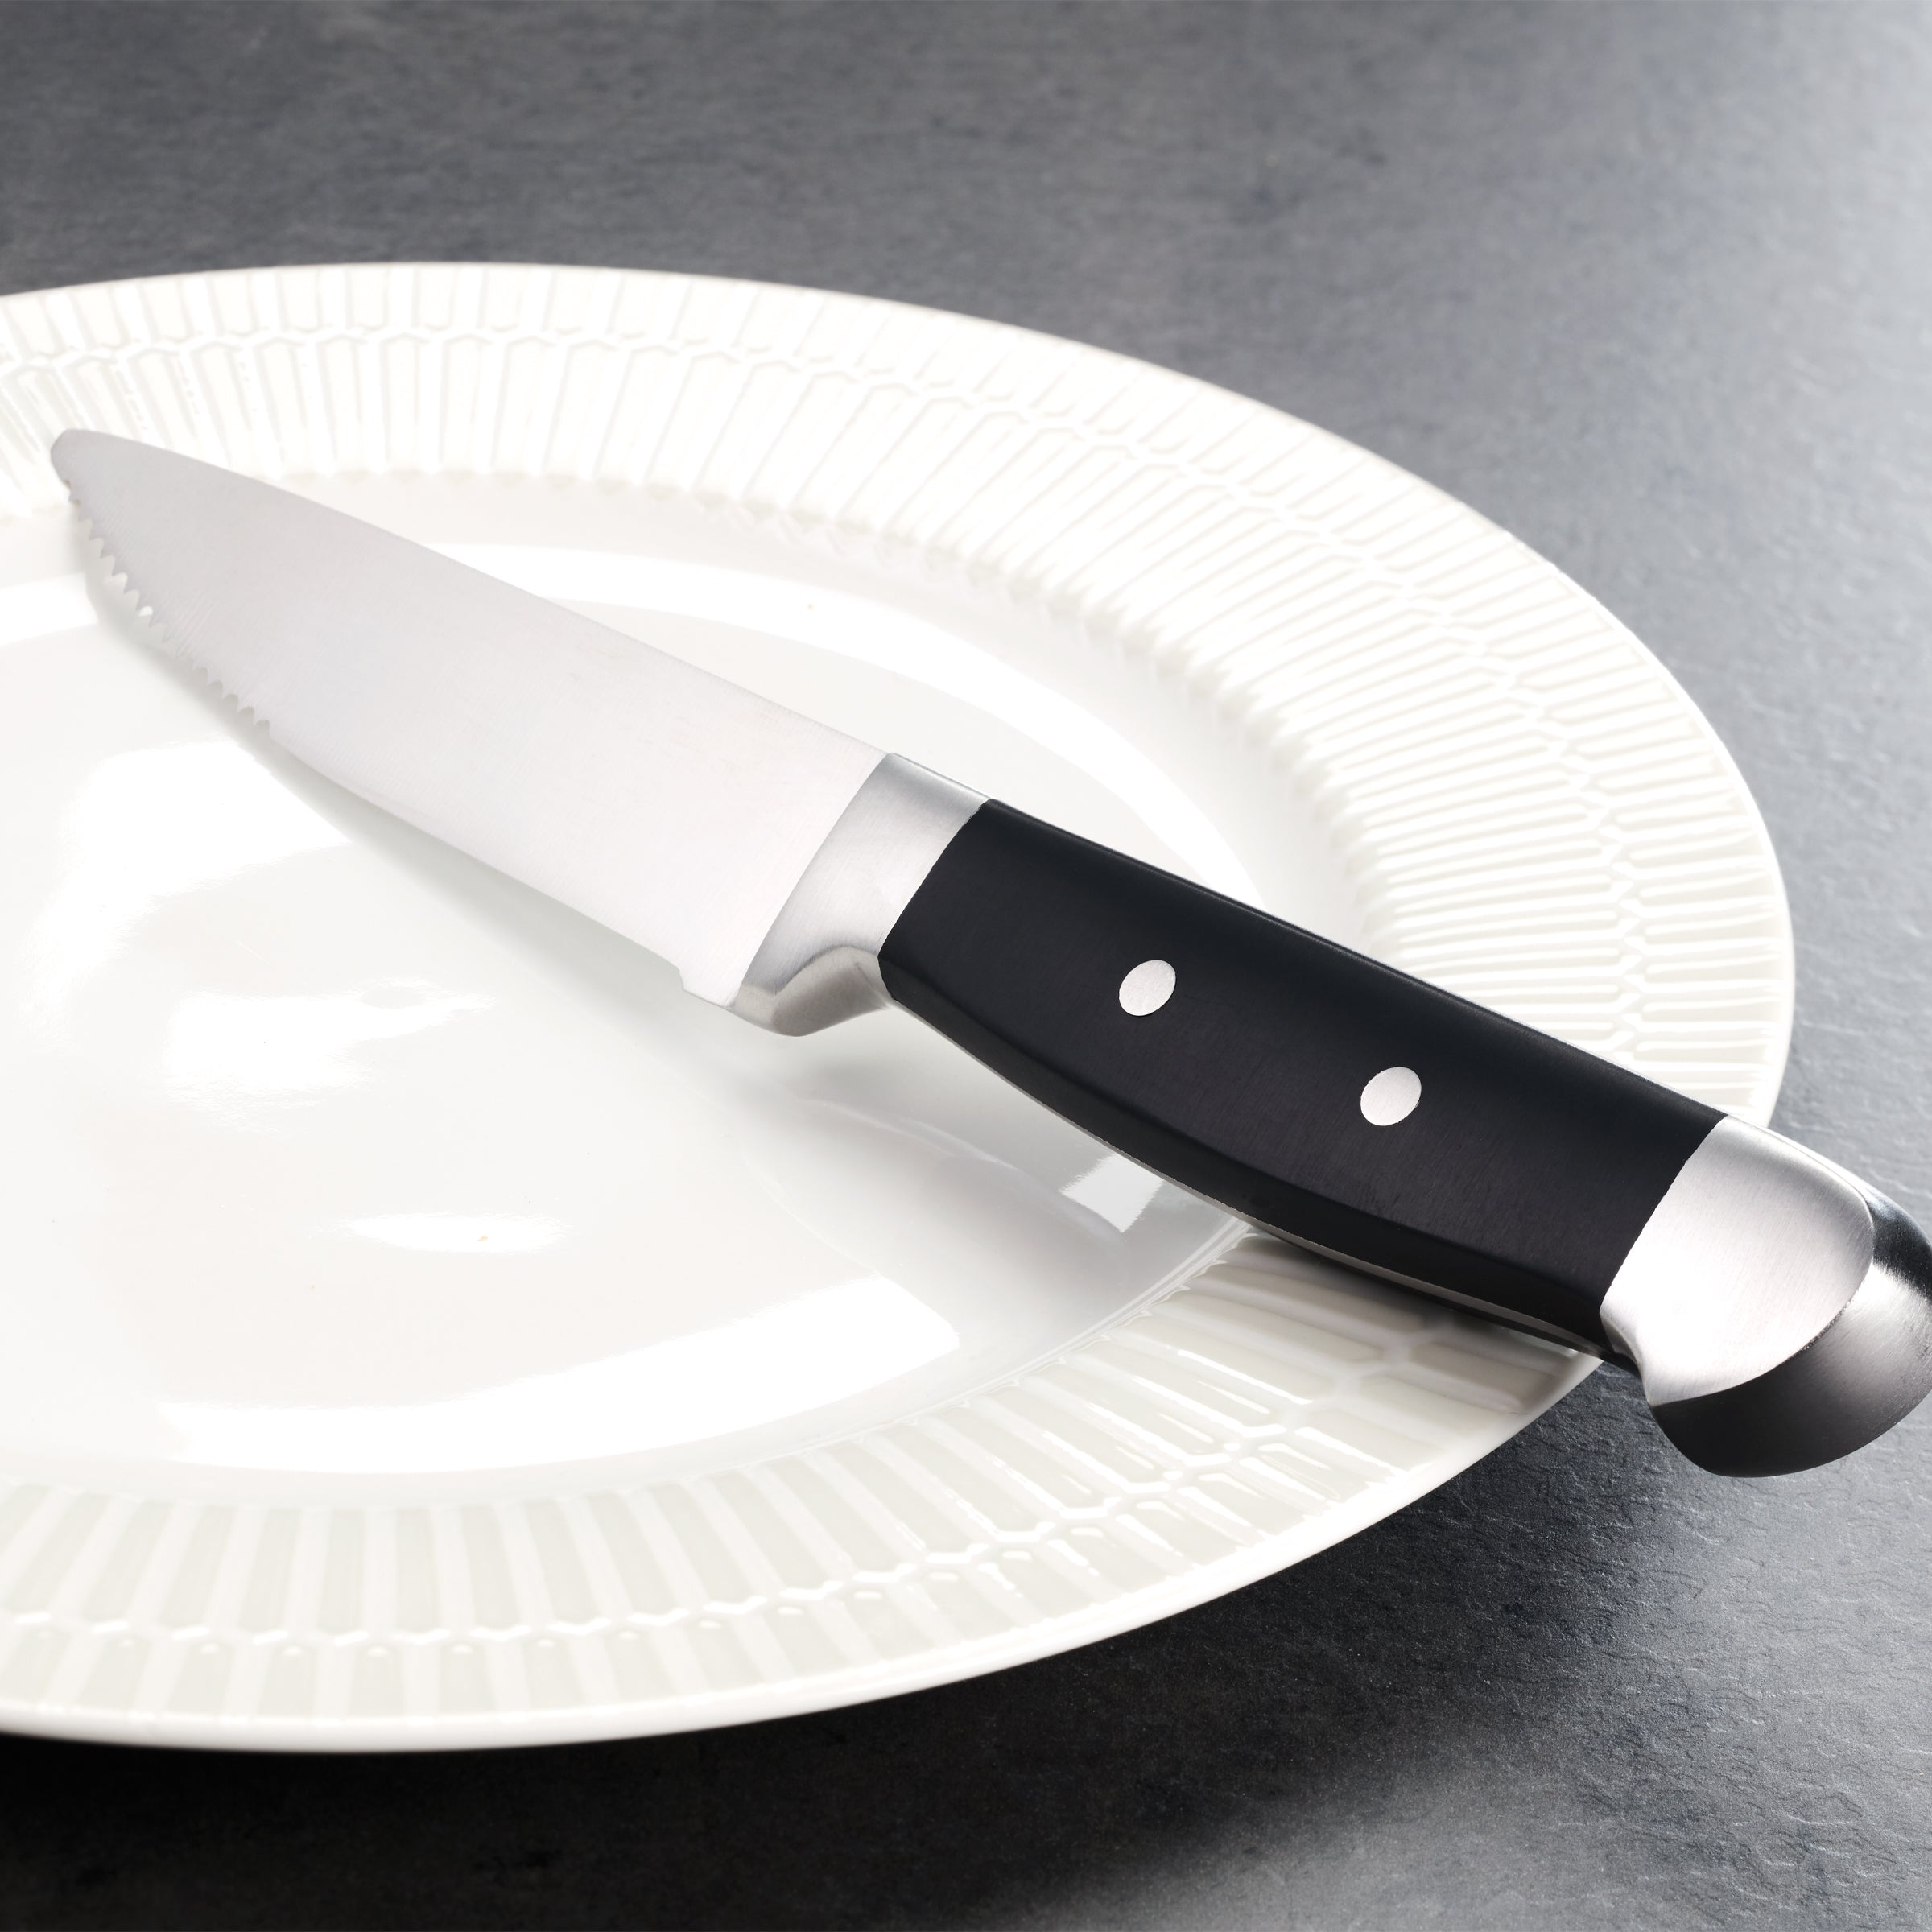 14-Piece Cutlery Block Set With Built-In Sharpener – Oneida